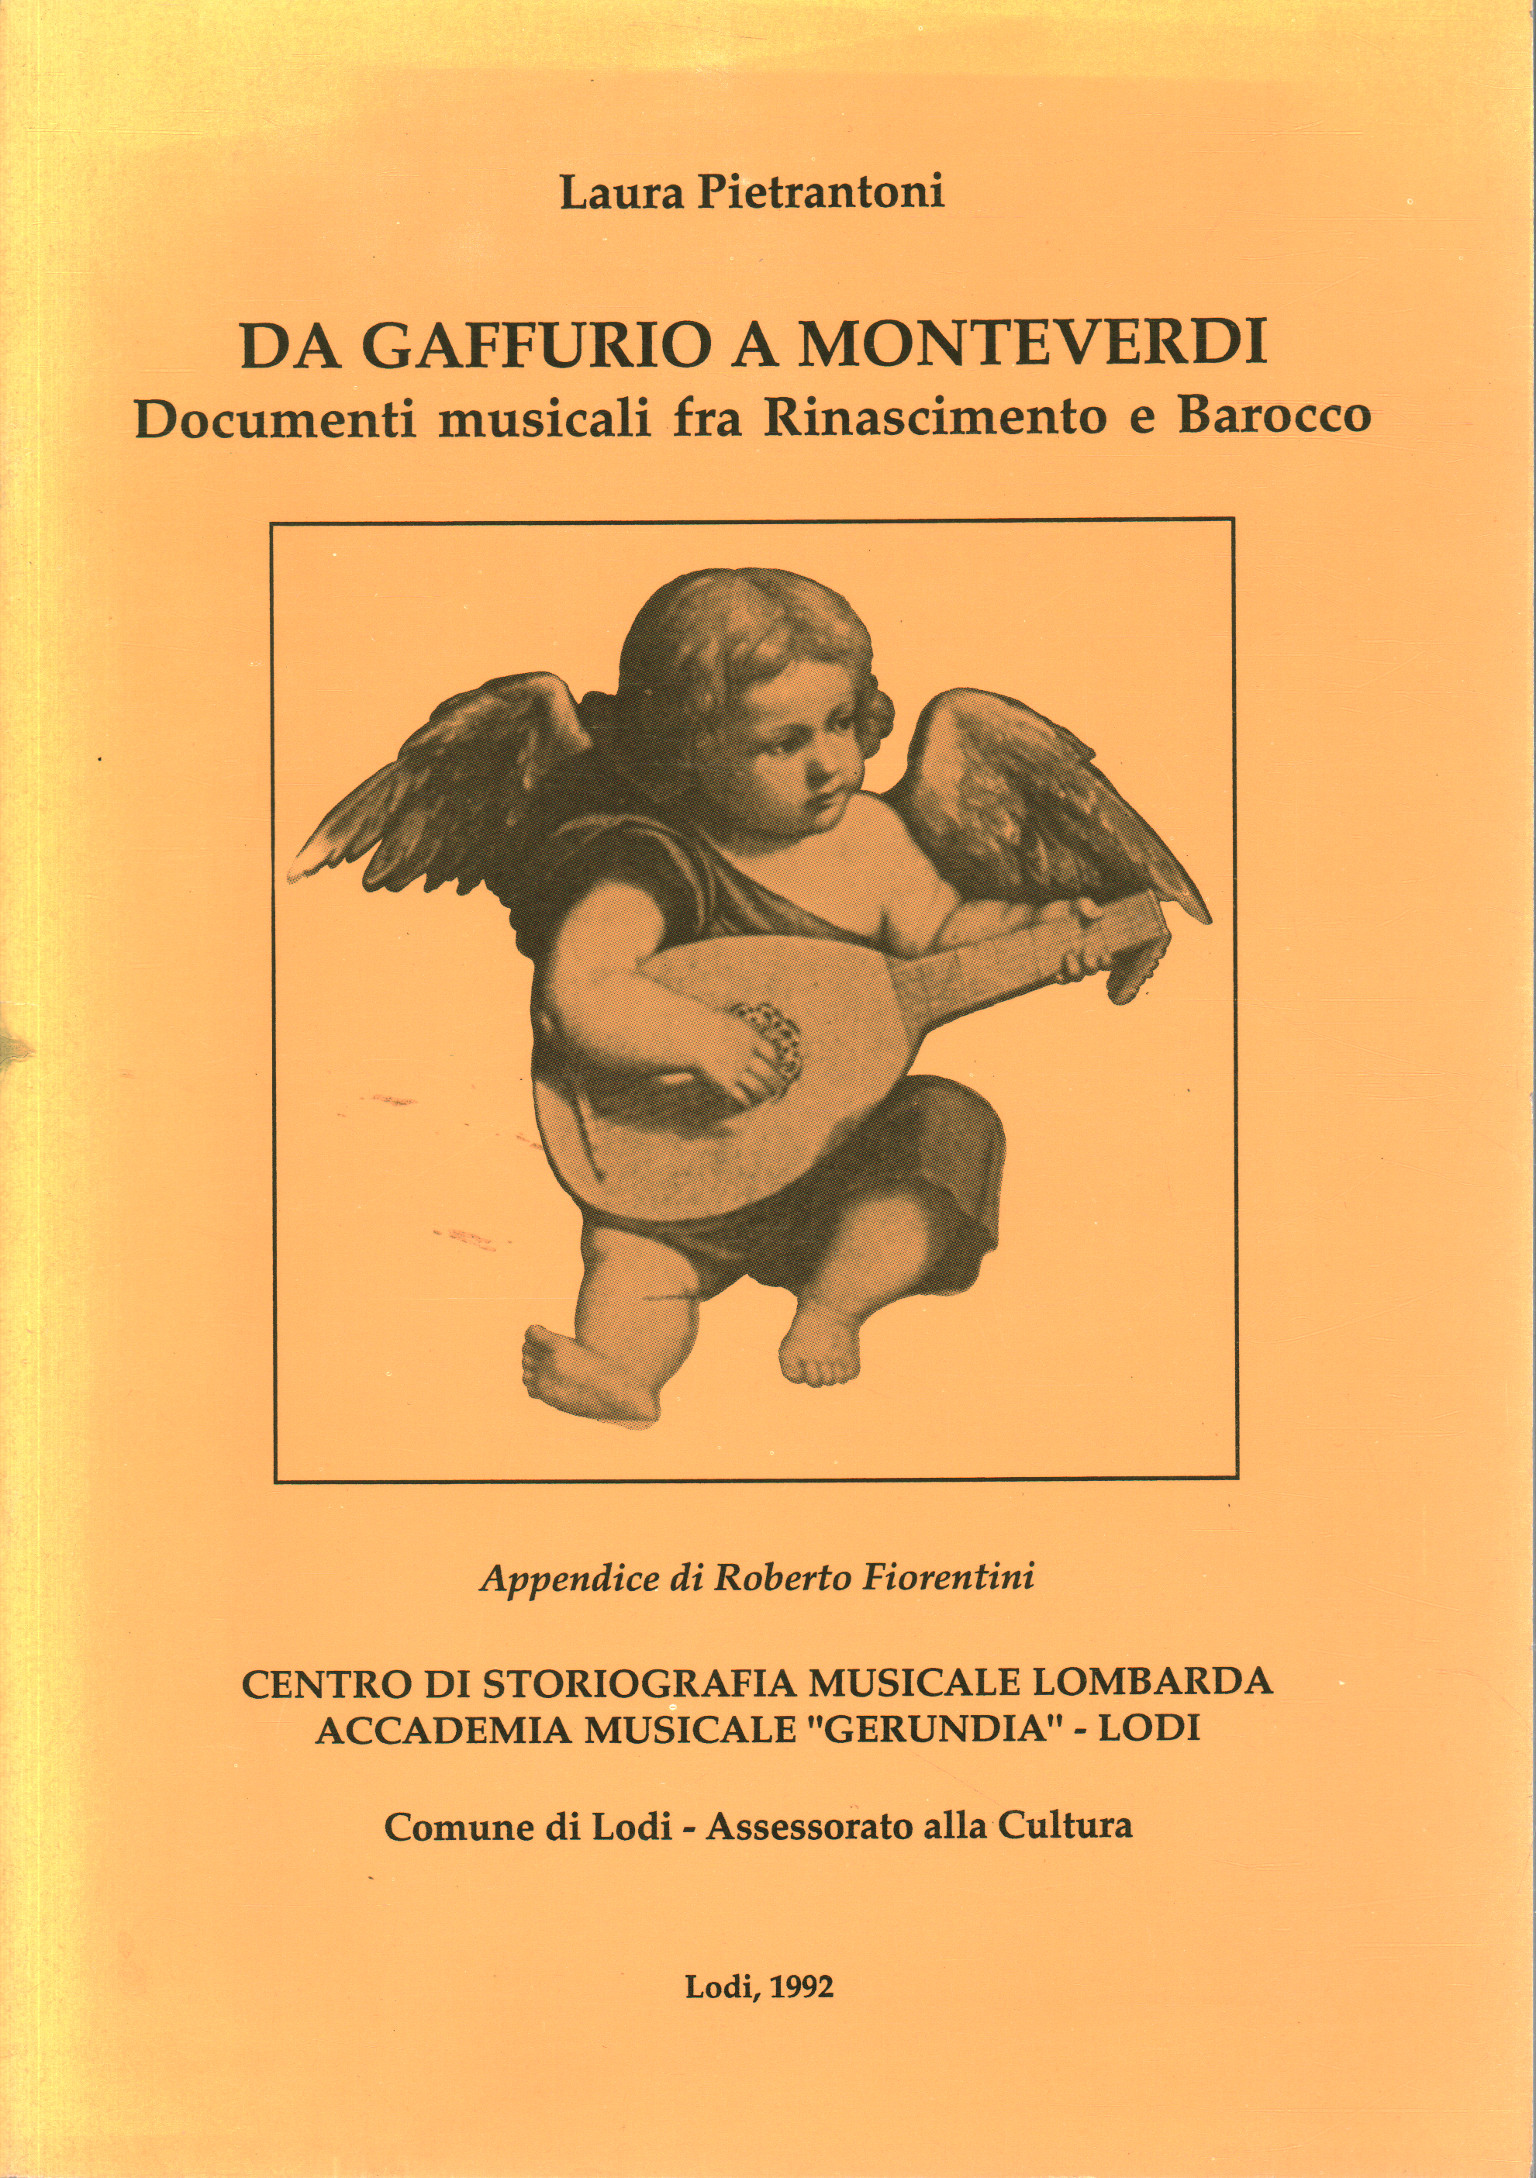 De Gaffurio a Monteverdi, Laura Pietrantoni